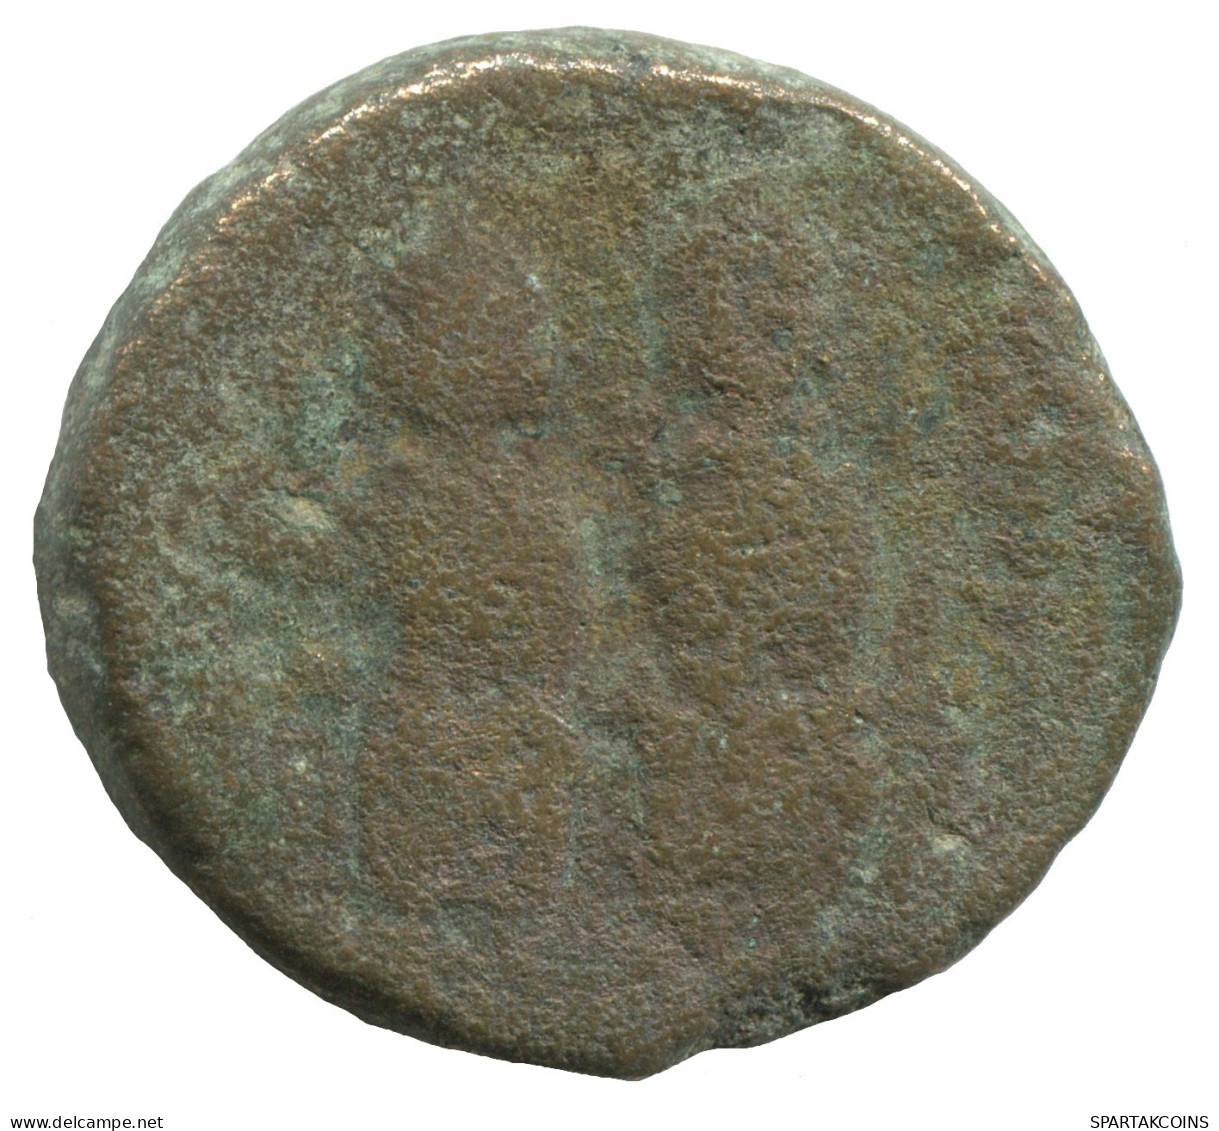 JUSTIN II AND SOPHIA AE FOLLIS 565-578 AD 14.9g/28mm BYZANTIN #SAV1025.10.F.A - Byzantines